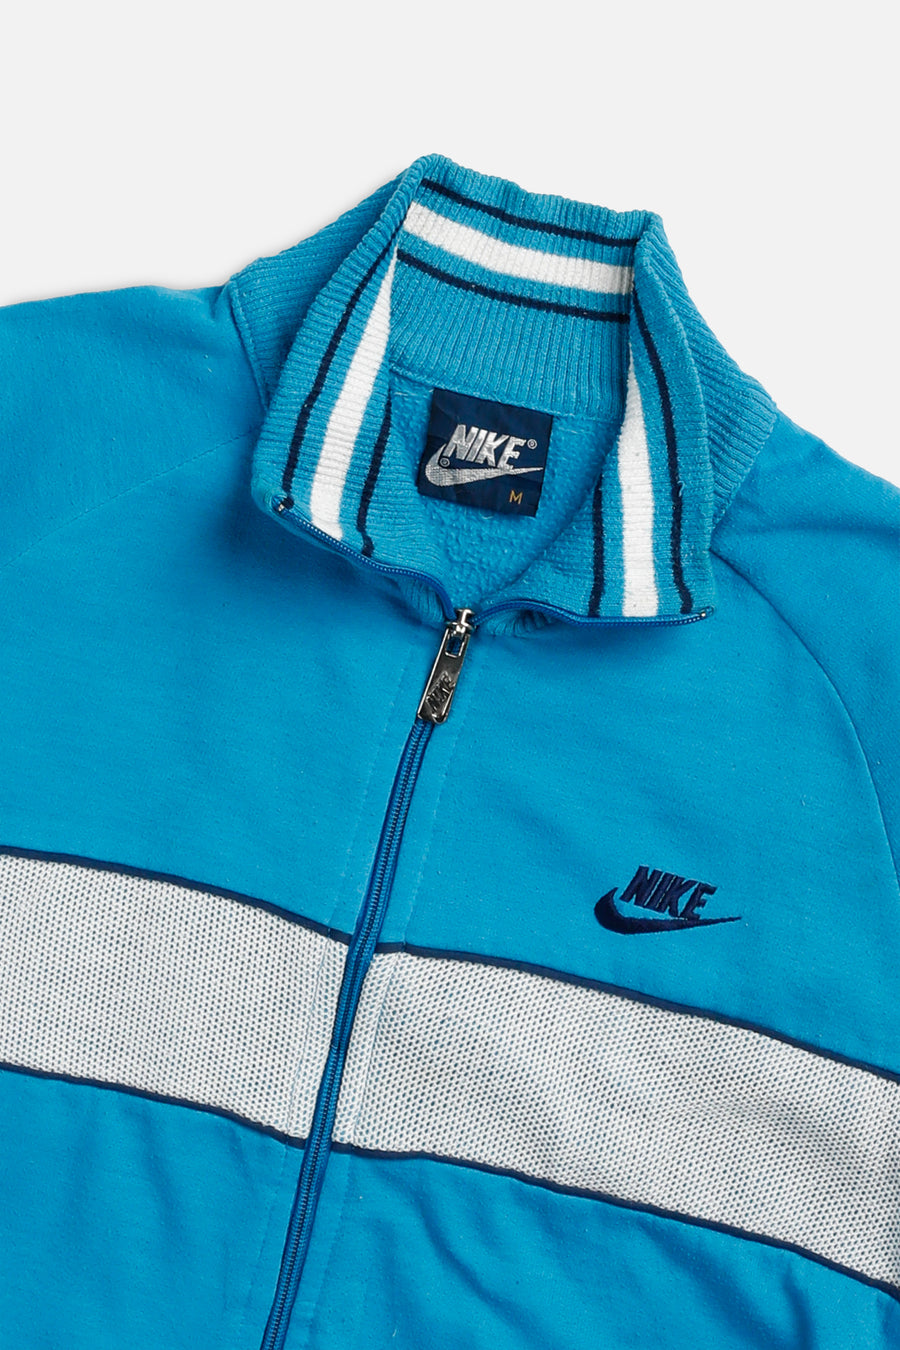 Vintage Nike Zip Sweatshirt - M